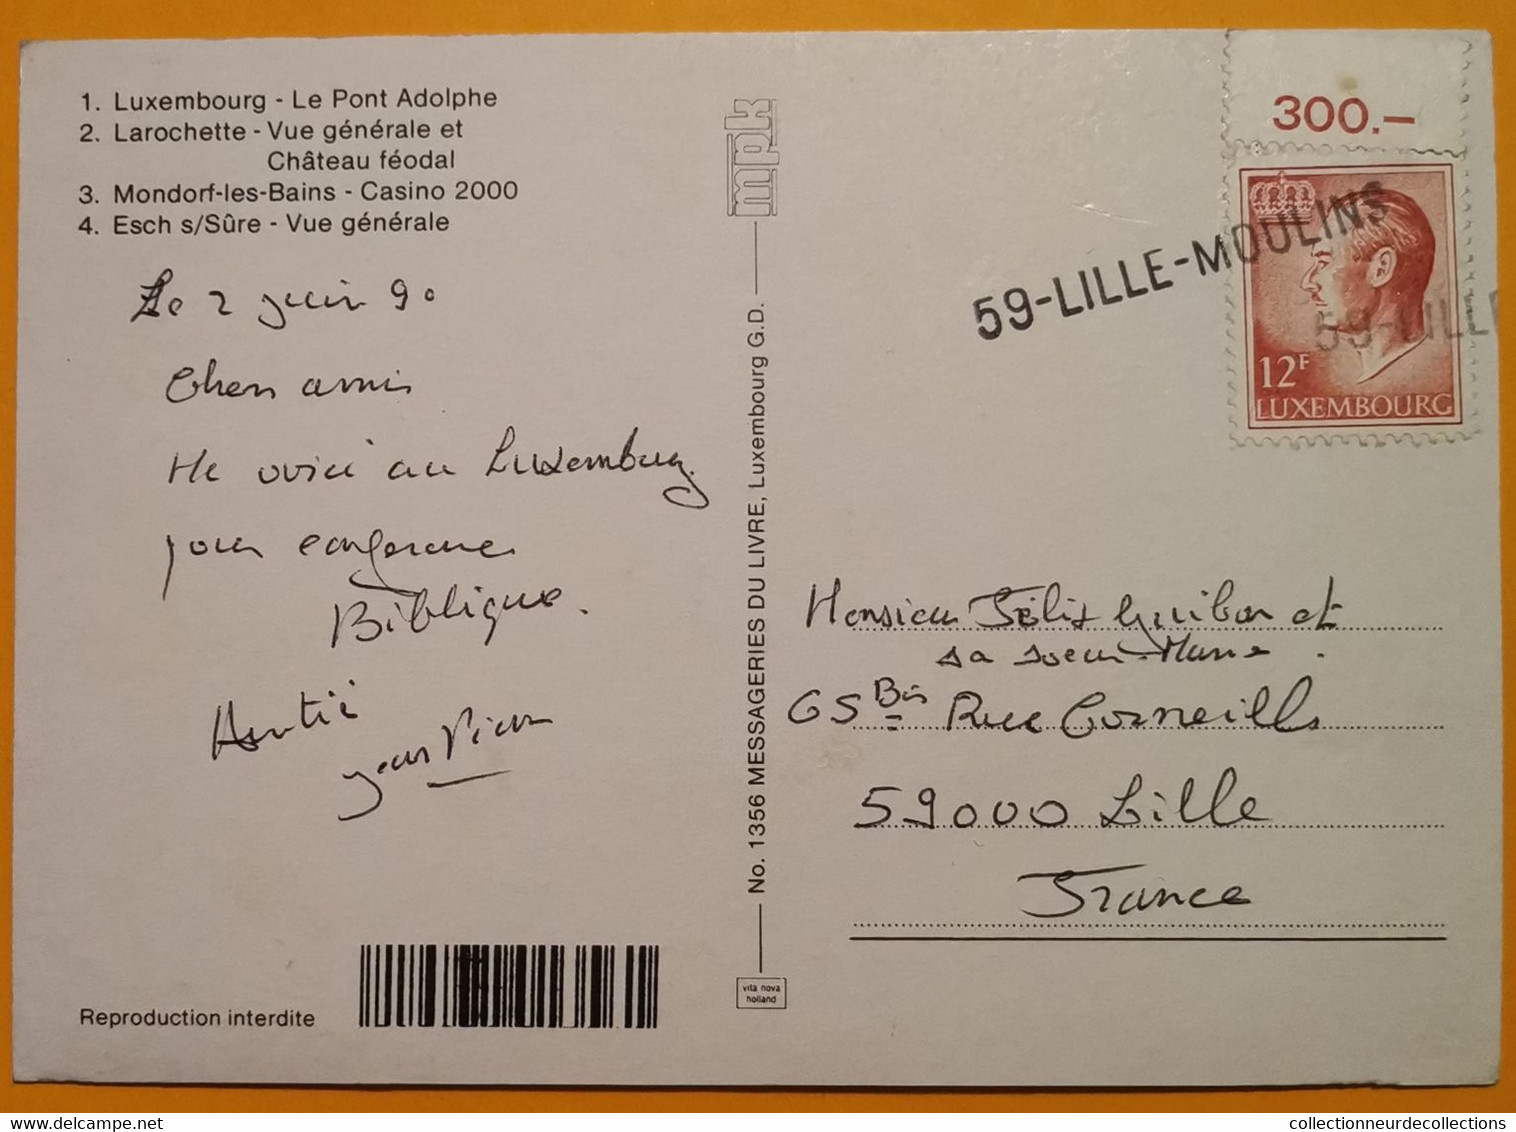 Superbe GRIFFE Linéaire 59-LILLE-MOULINS De 1990 Sur Cpm Luxembourg > France - Lettres & Documents